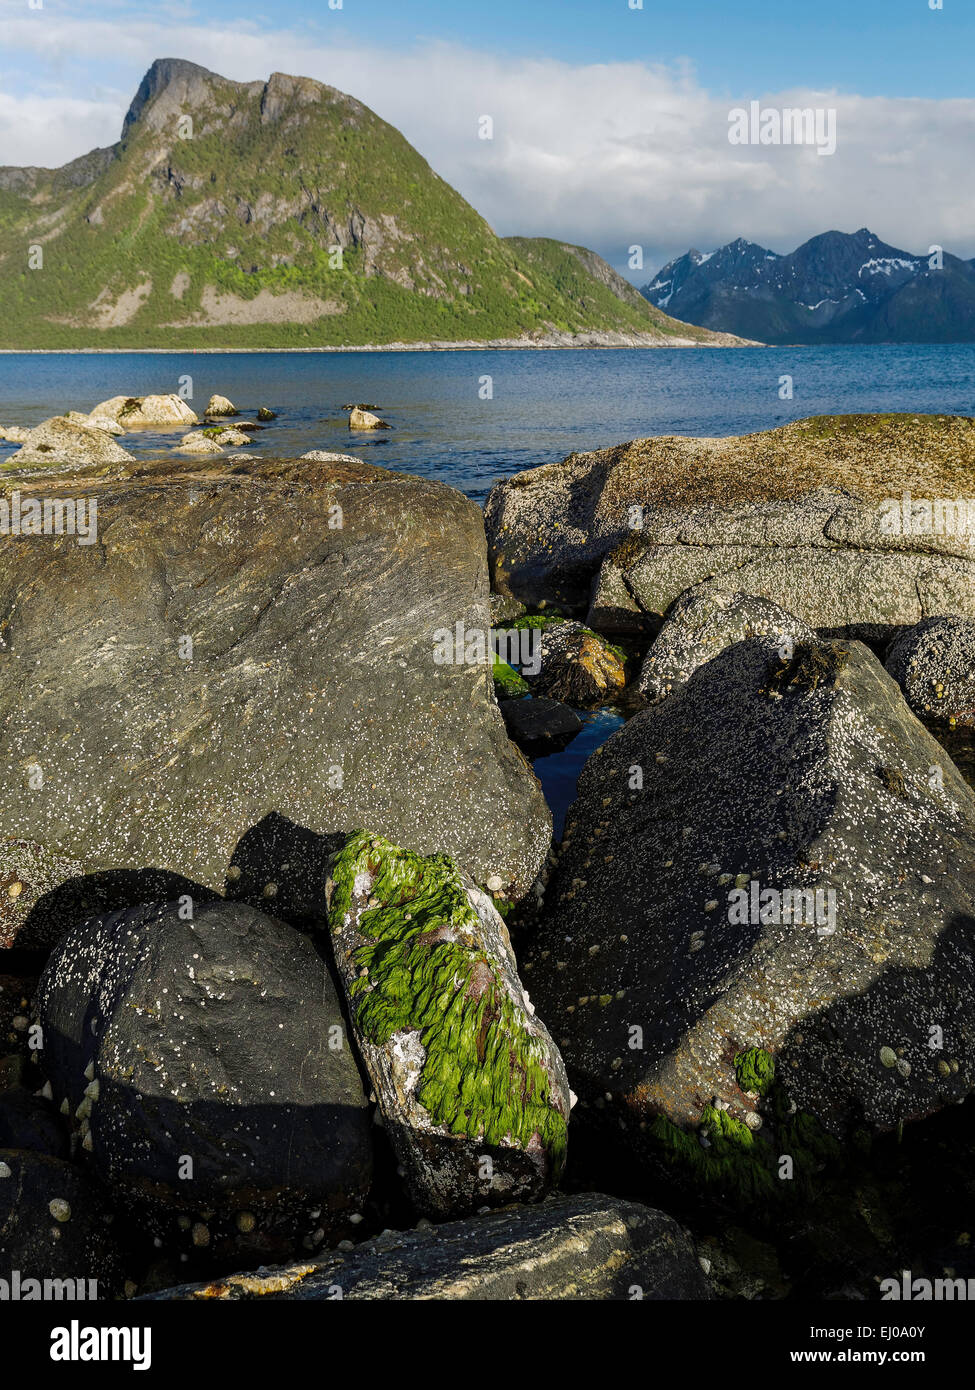 Alga, rock, acantilados, fiordos, montañas, alga verde, Grunnfarnes, costa, costales, rango, el paisaje, el paisaje, el mar, el Mar del Norte, Noruega, E Foto de stock